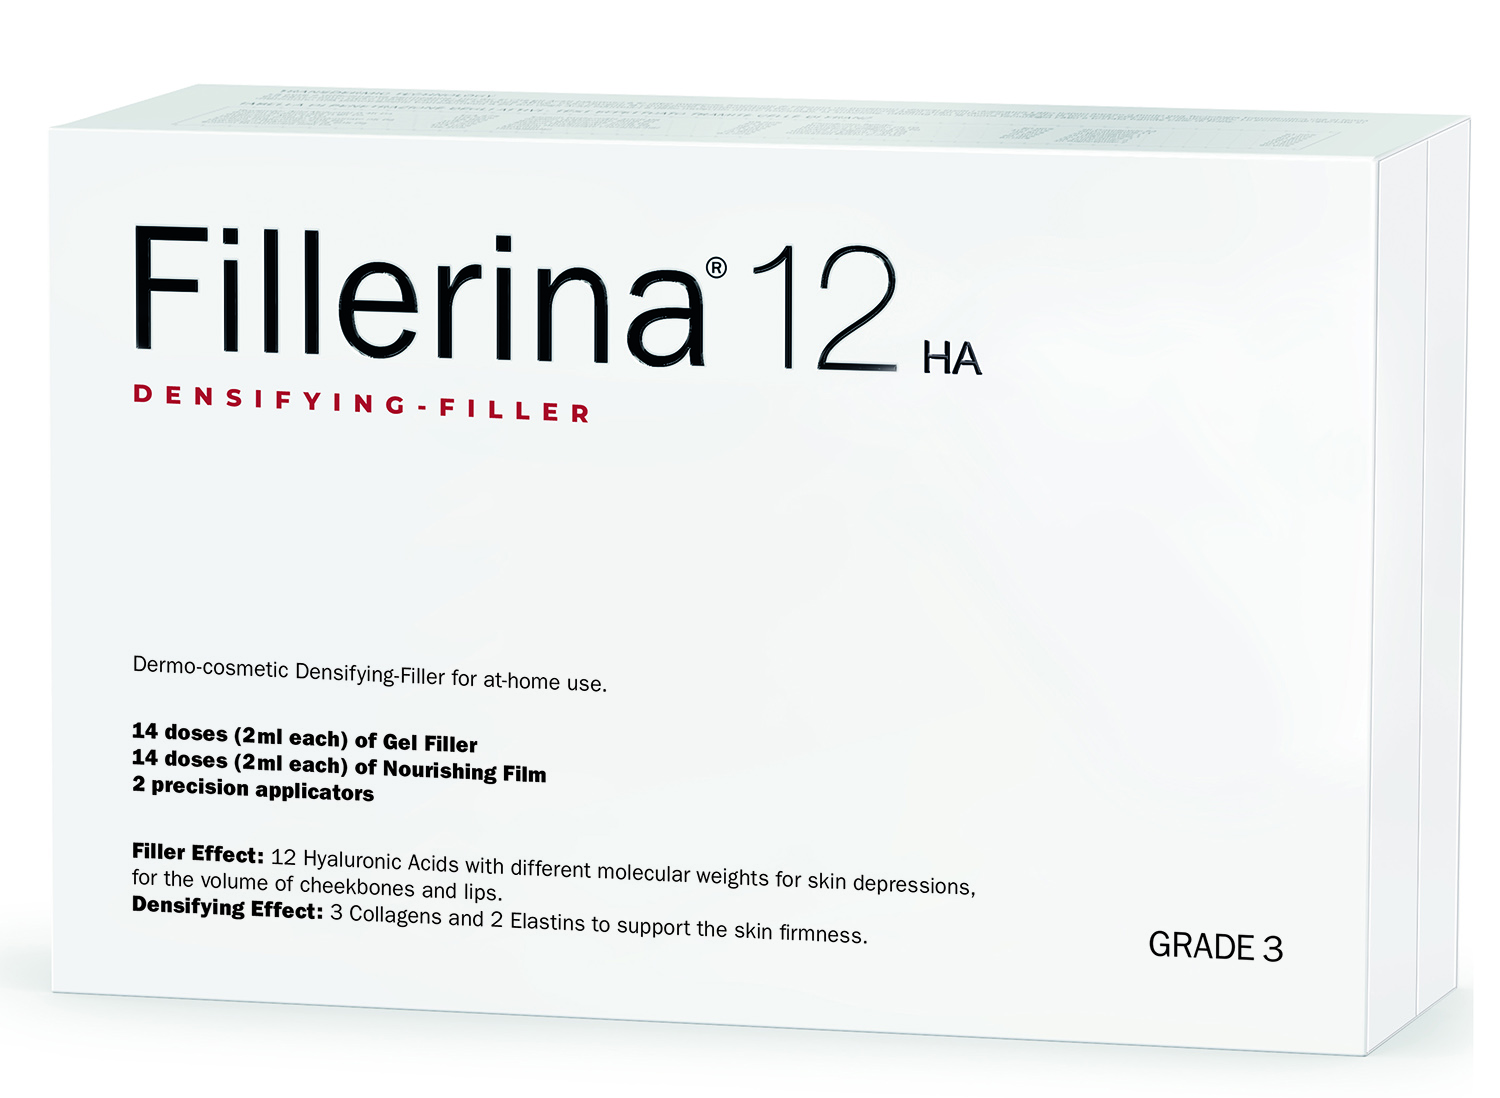 fillerina 12 ha densifying filler дермо косметический филлер с укрепляющим эффектом уровень 3 30 мл 30 мл Fillerina Дермо-косметический набор с укрепляющим эффектом Intensive уровень 3, 2 флакона х 30 мл (Fillerina, 12 HA Densifying-Filler)